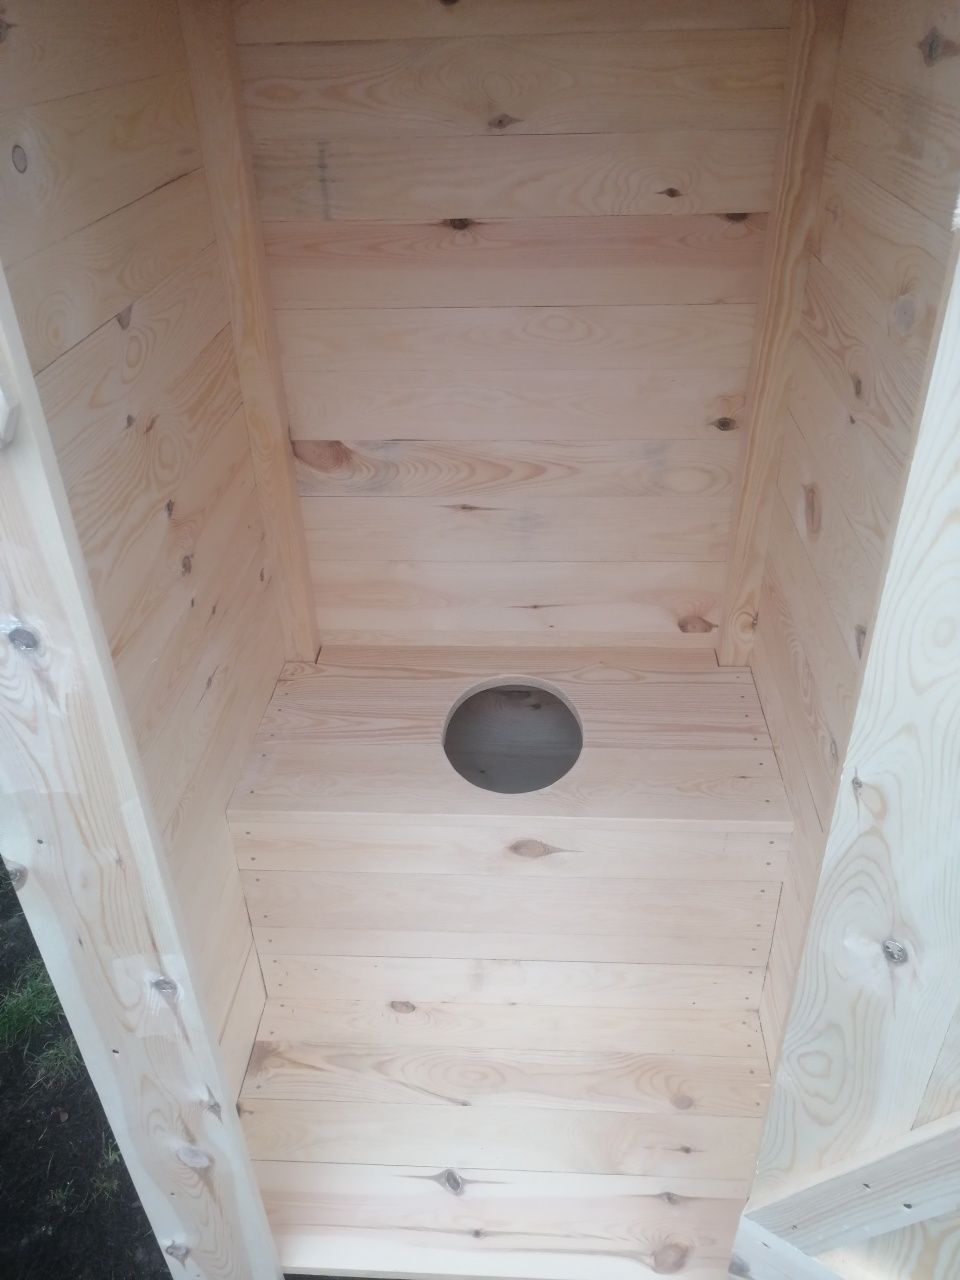 Nowy kibel drewniany wychodek szalet toaleta ogrodowa WC